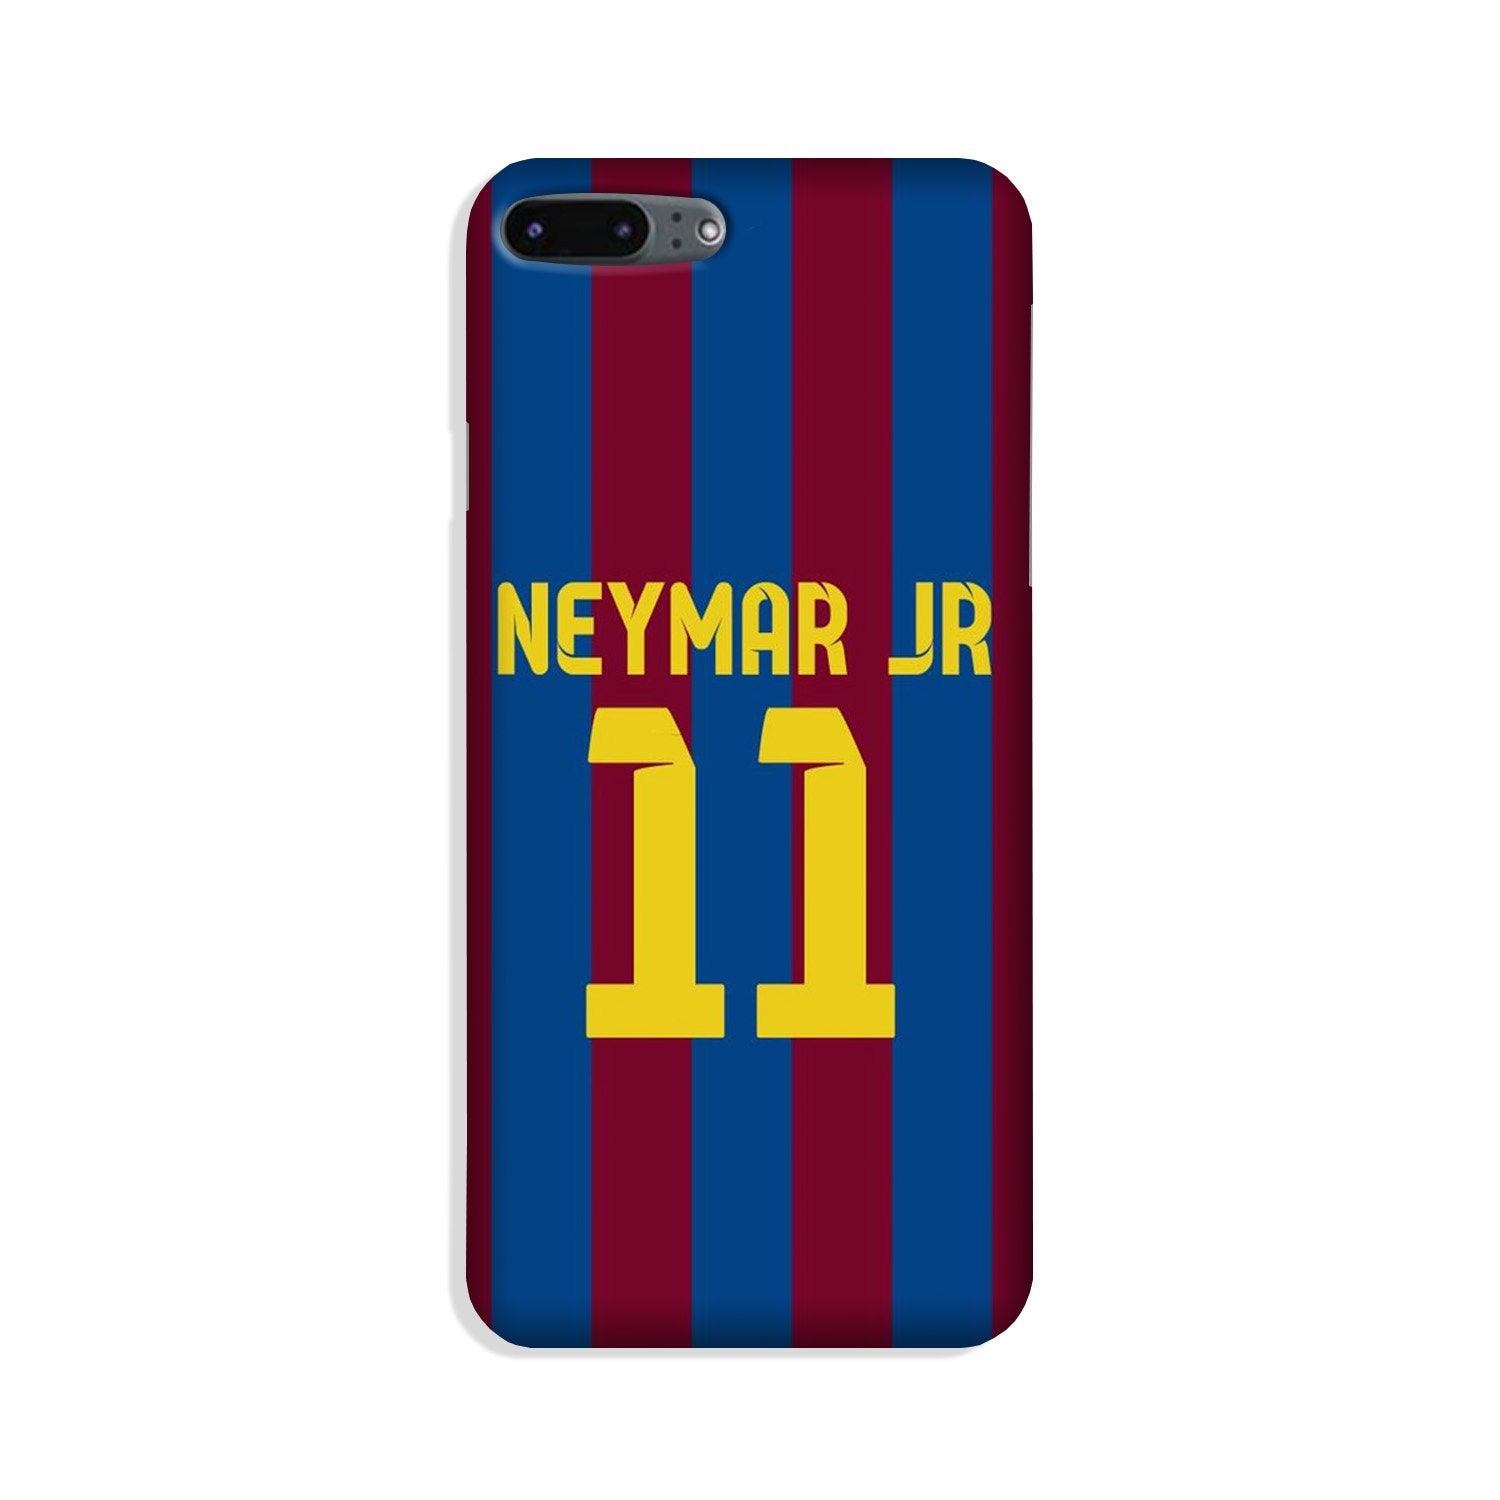 Neymar Jr Case for iPhone 8 Plus  (Design - 162)